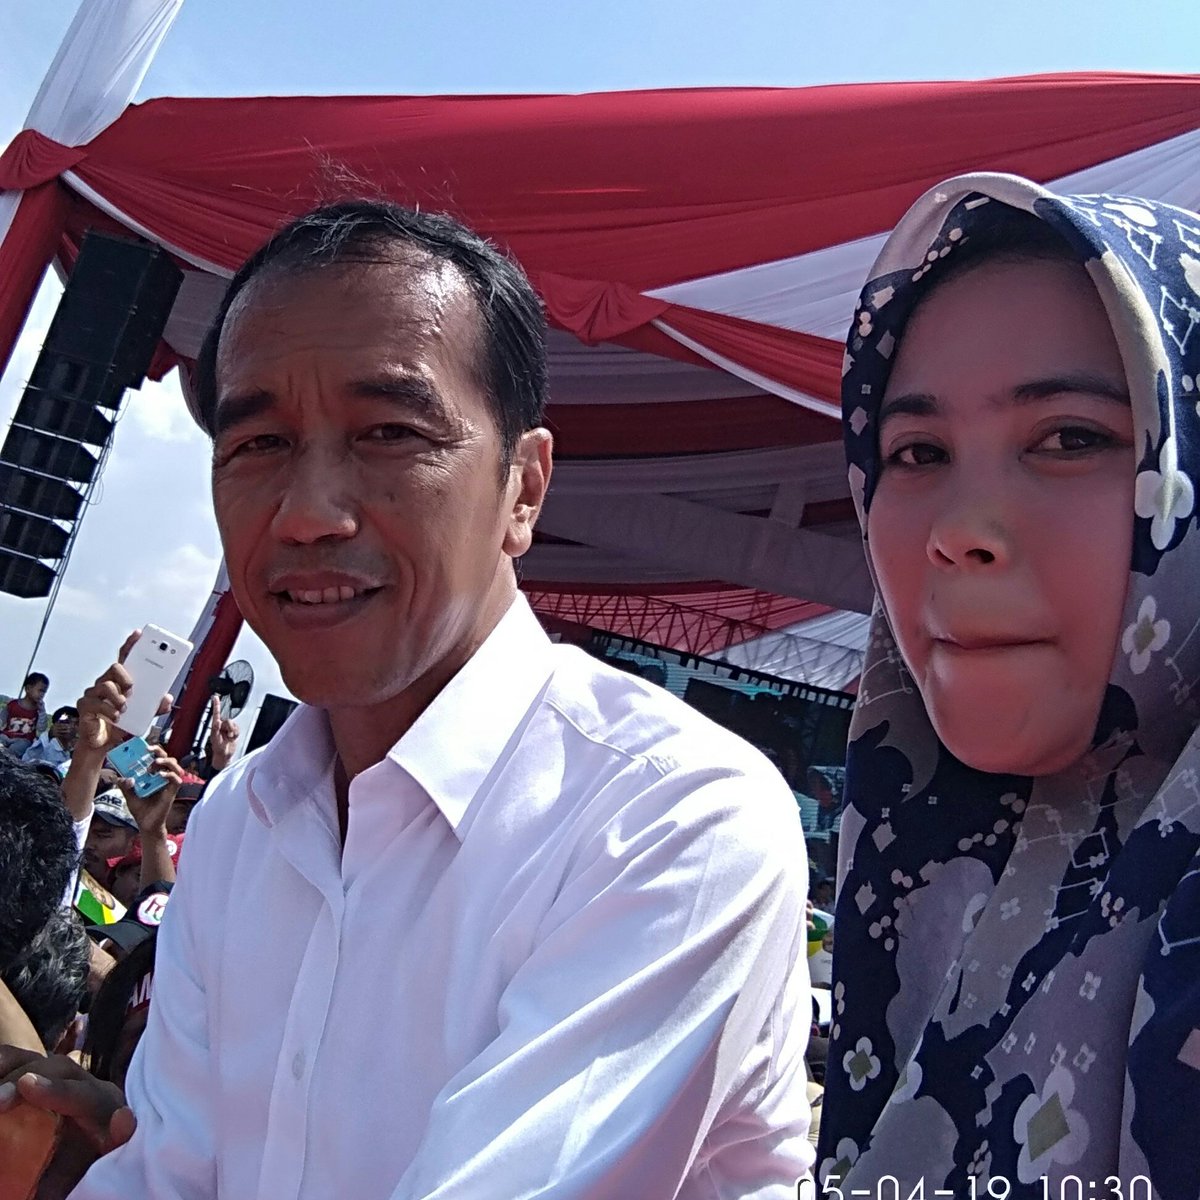 Dari Tanah Sunda 🇮🇩, saya senang bersama puluhan juta Generasi Optimis akan Terus  Mendukung Presiden Jokowi Untuk Indonesia Lebih Maju.

#SayaBersamaJokowi